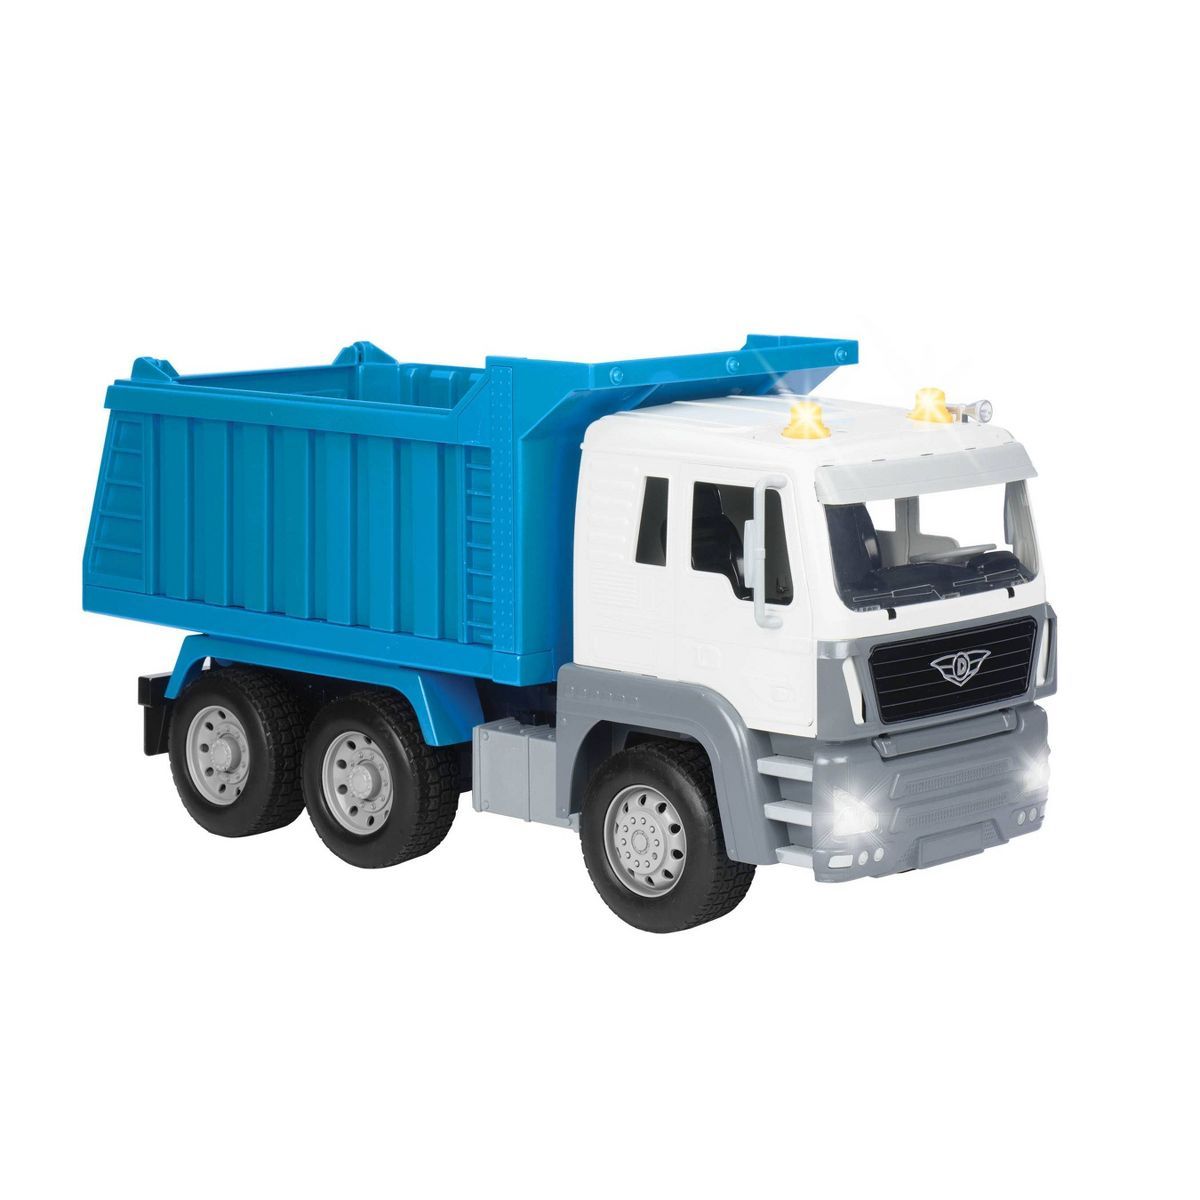 DRIVEN – Toy Dump Truck – Standard Series | Target